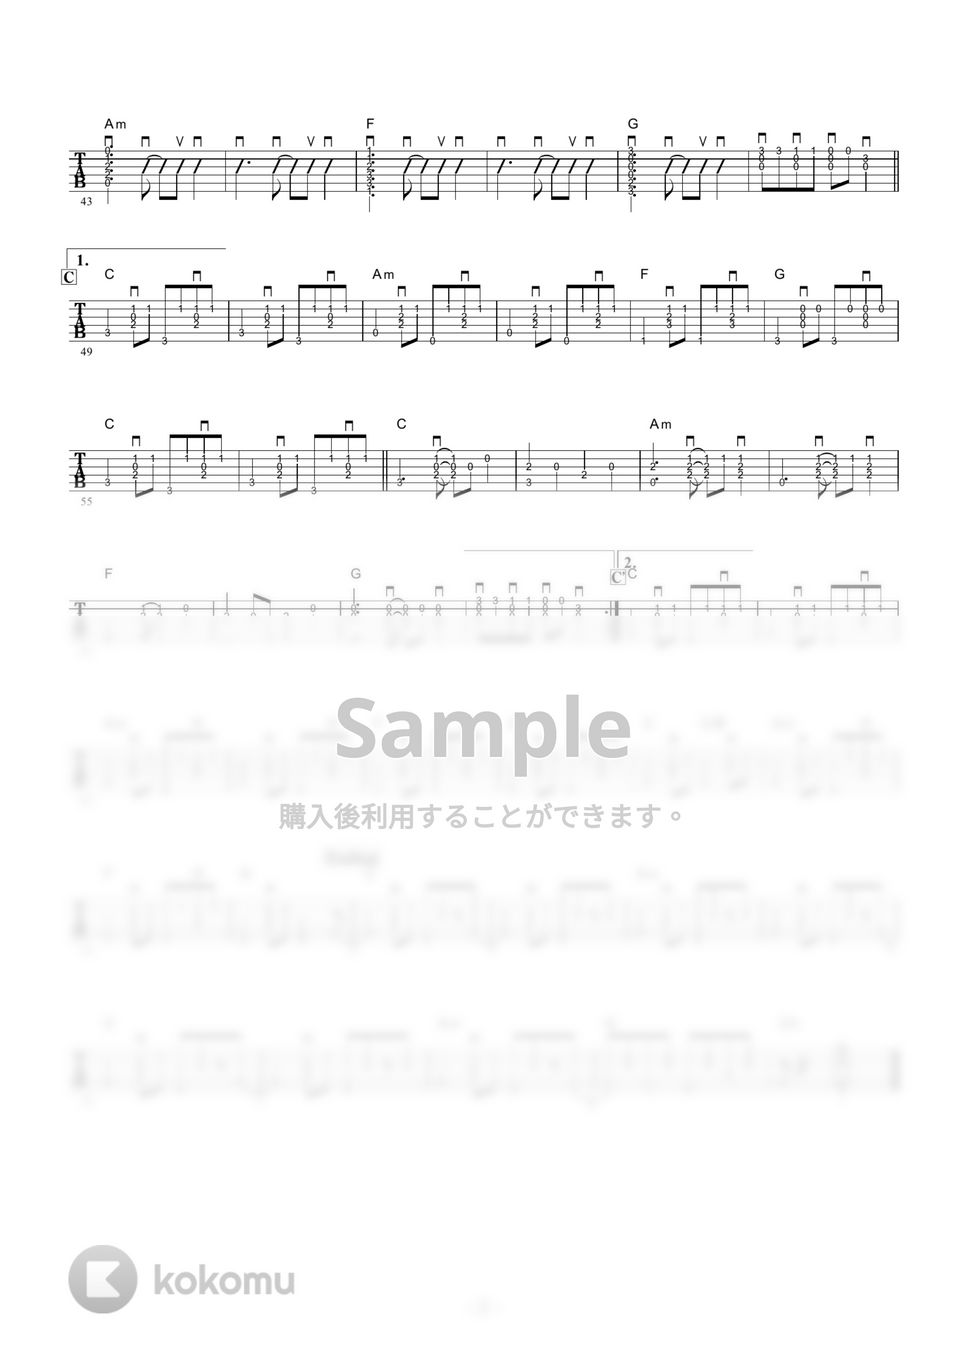 荒井由実 - ルージュの伝言 (ギター伴奏 / イントロ・間奏ソロギター) by 伴奏屋TAB譜